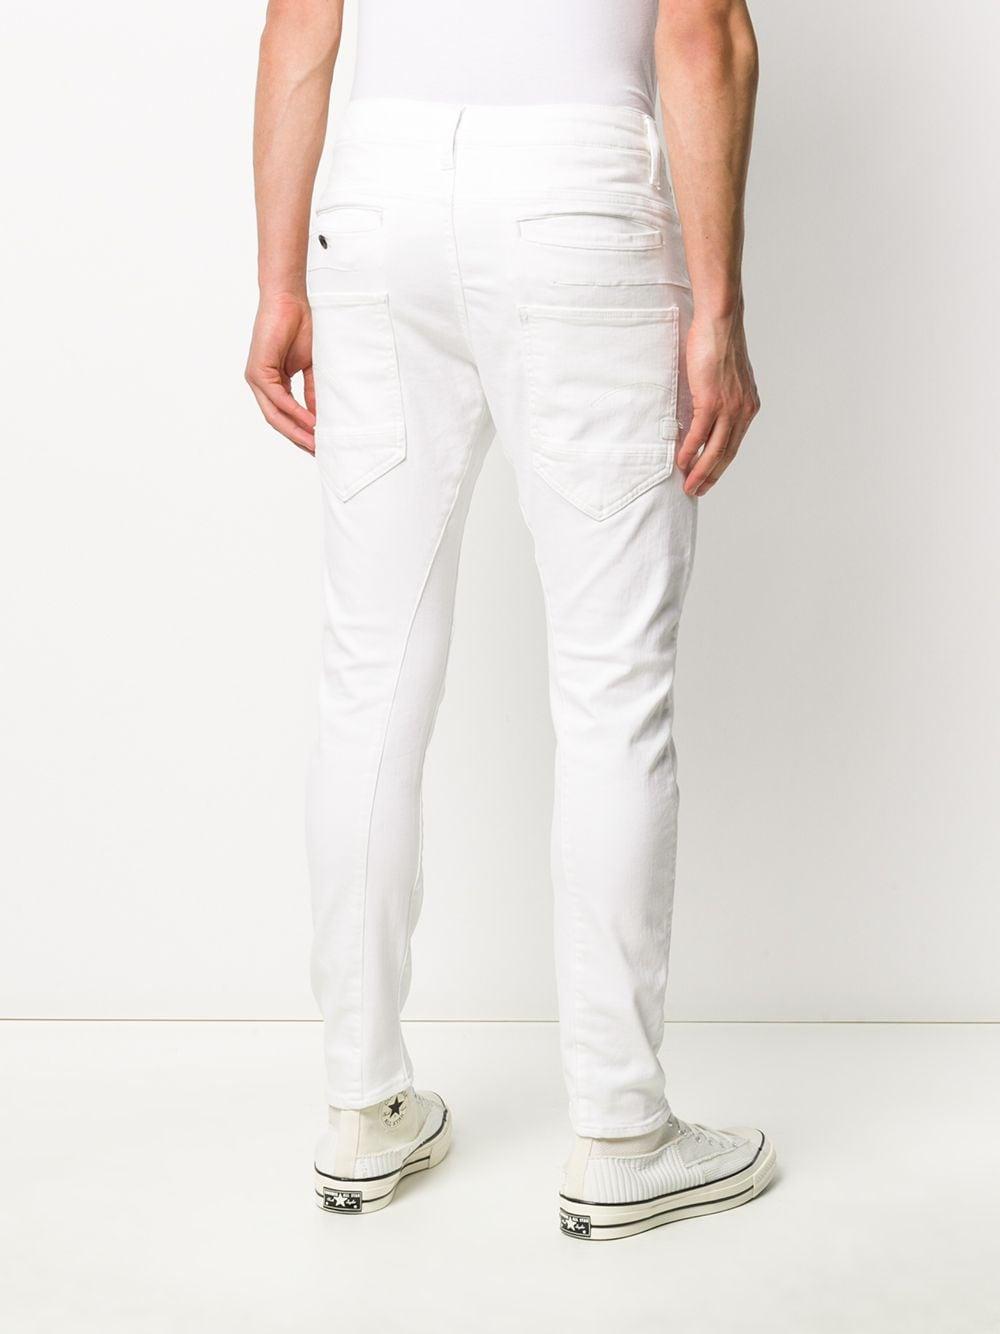 G-Star RAW Denim Multi-pocket Skinny Jeans in White for Men - Lyst